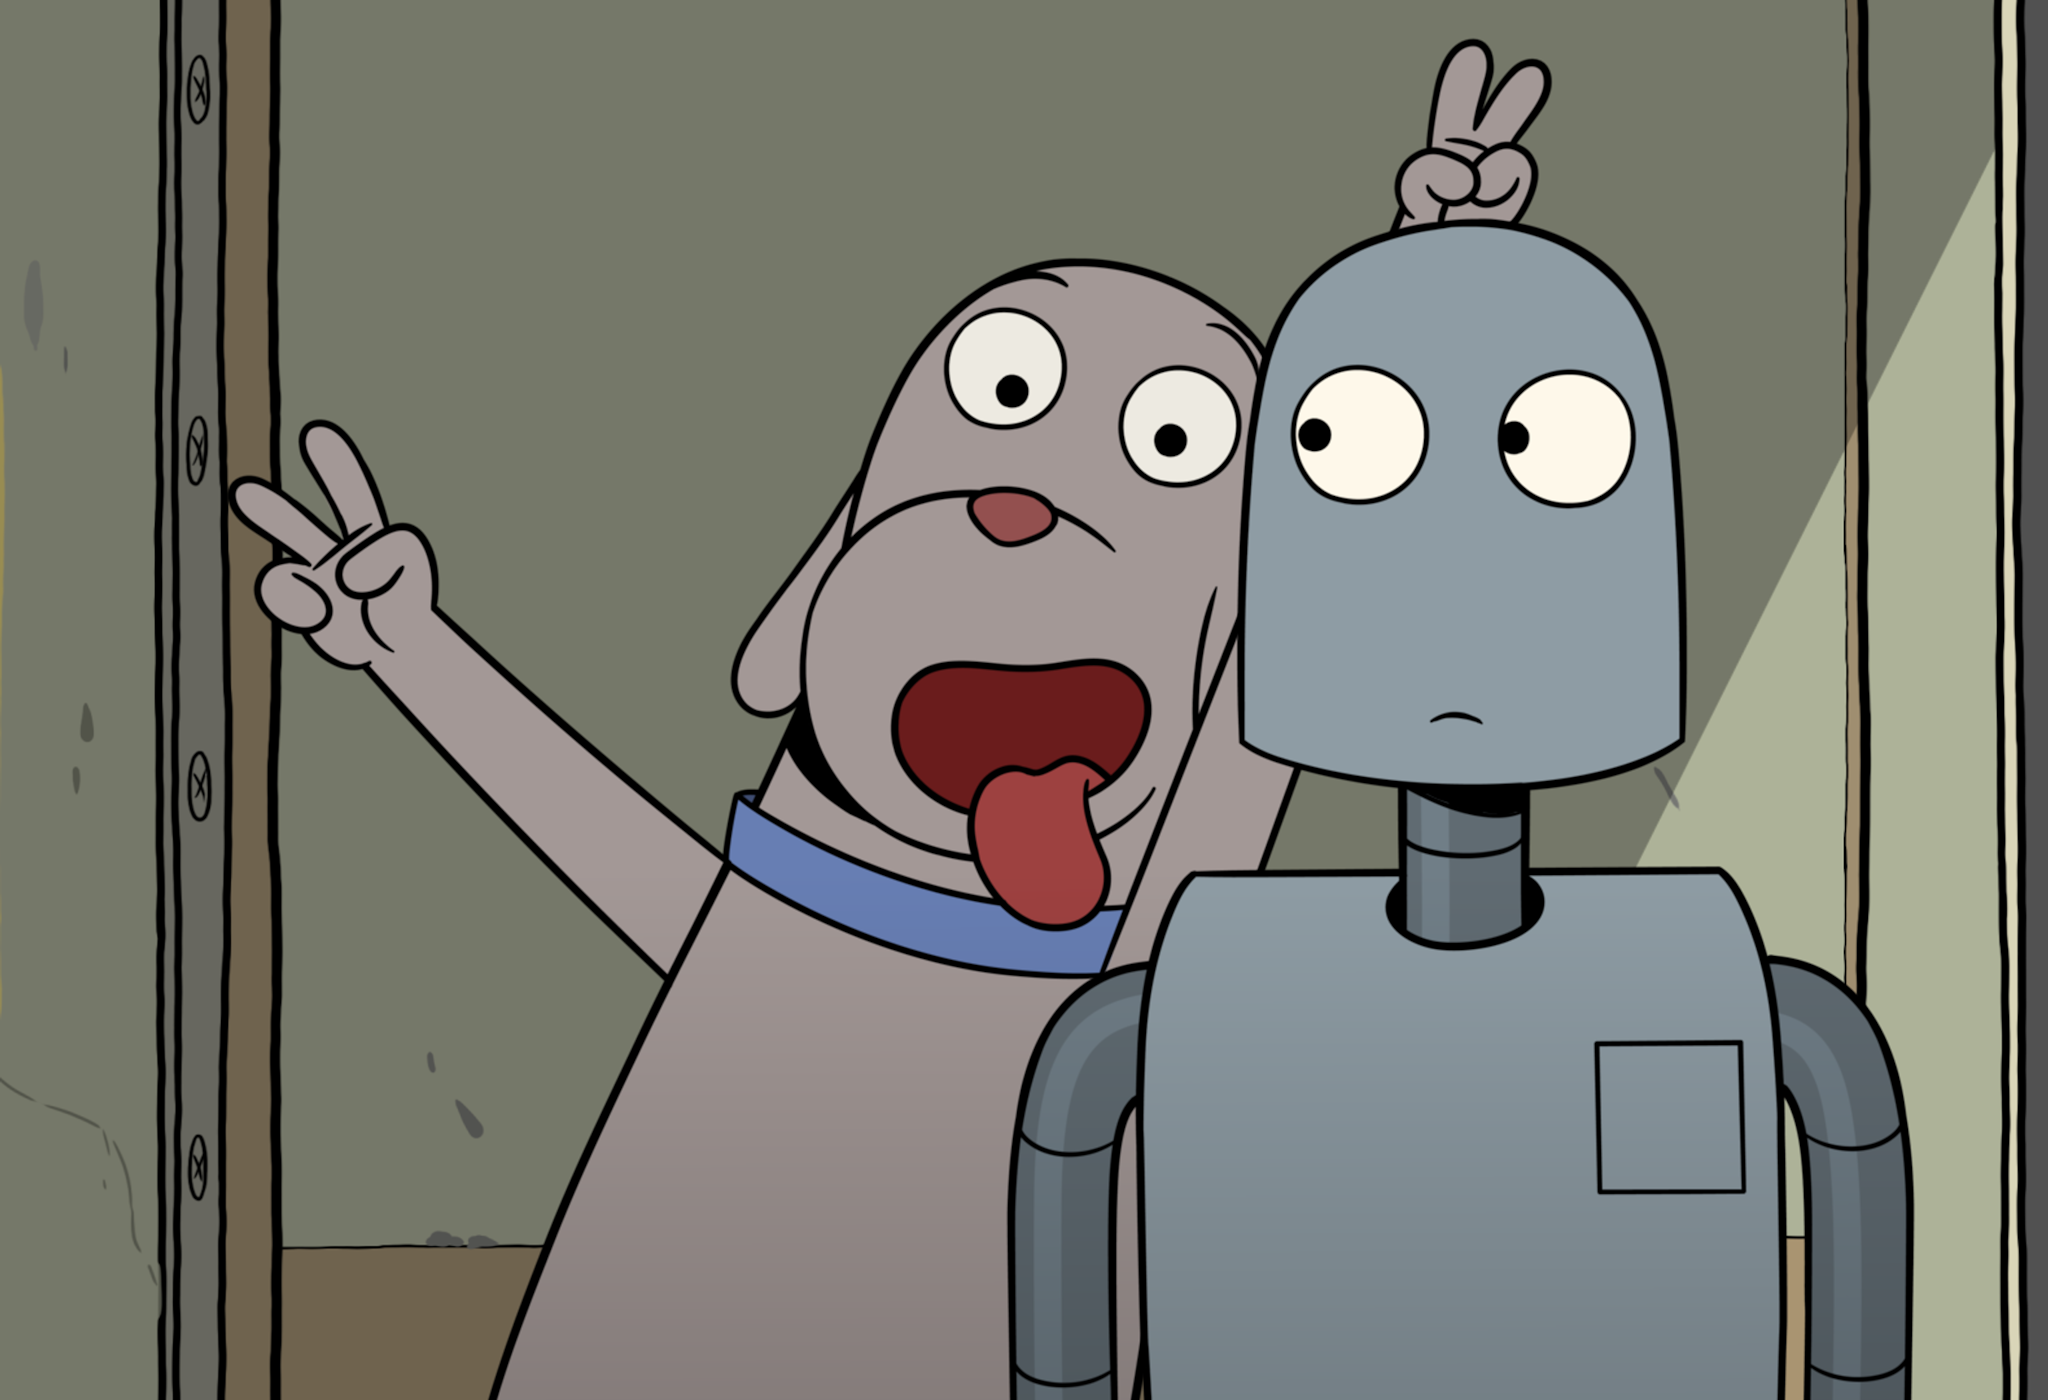 Fotograma de la película de animación 'Robot Dreams', del director Pablo Berger